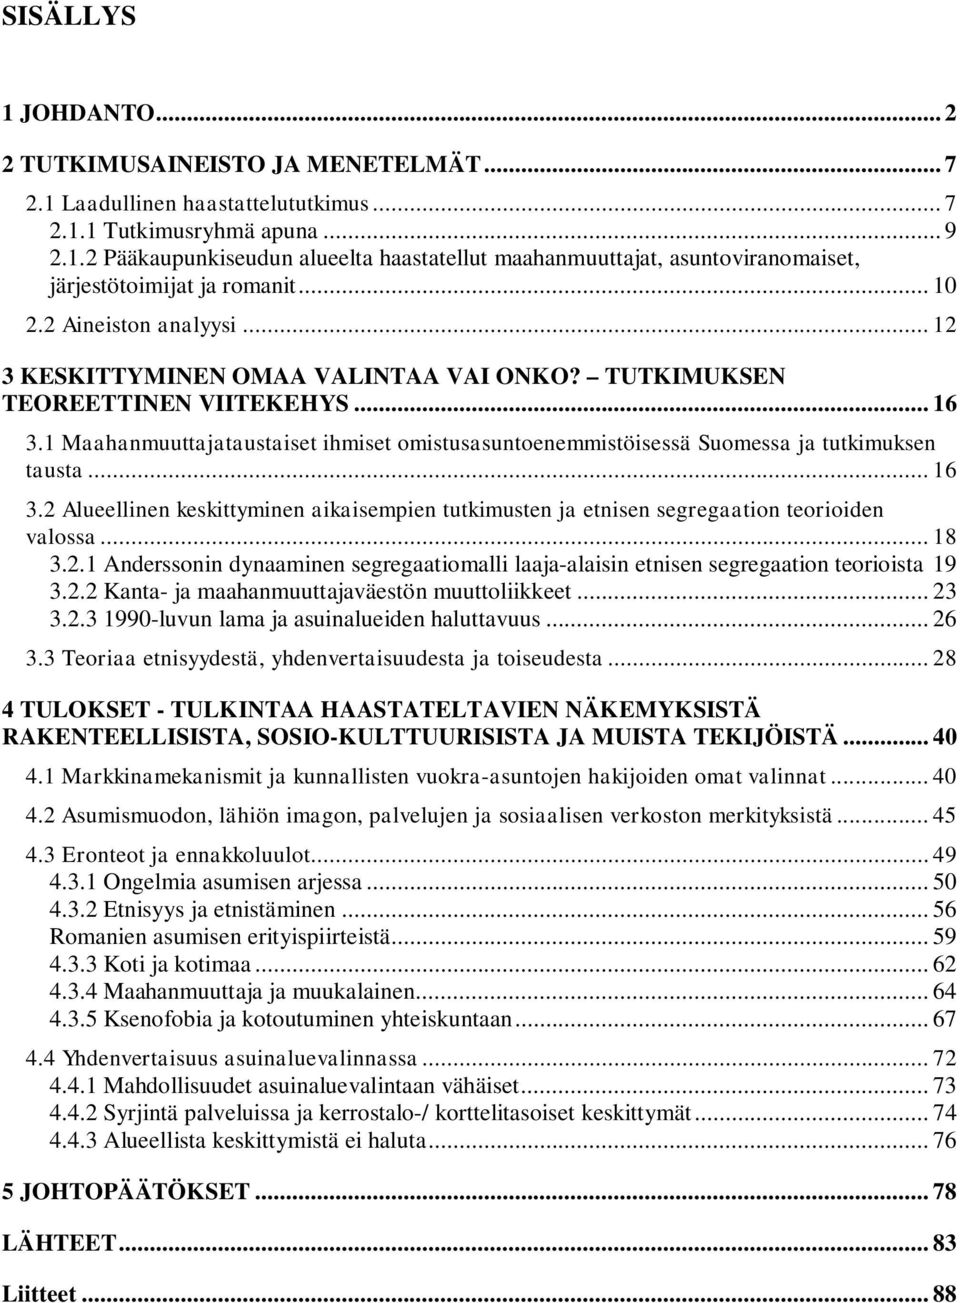 1 Maahanmuuttajataustaiset ihmiset omistusasuntoenemmistöisessä Suomessa ja tutkimuksen tausta... 16 3.2 Alueellinen keskittyminen aikaisempien tutkimusten ja etnisen segregaation teorioiden valossa.